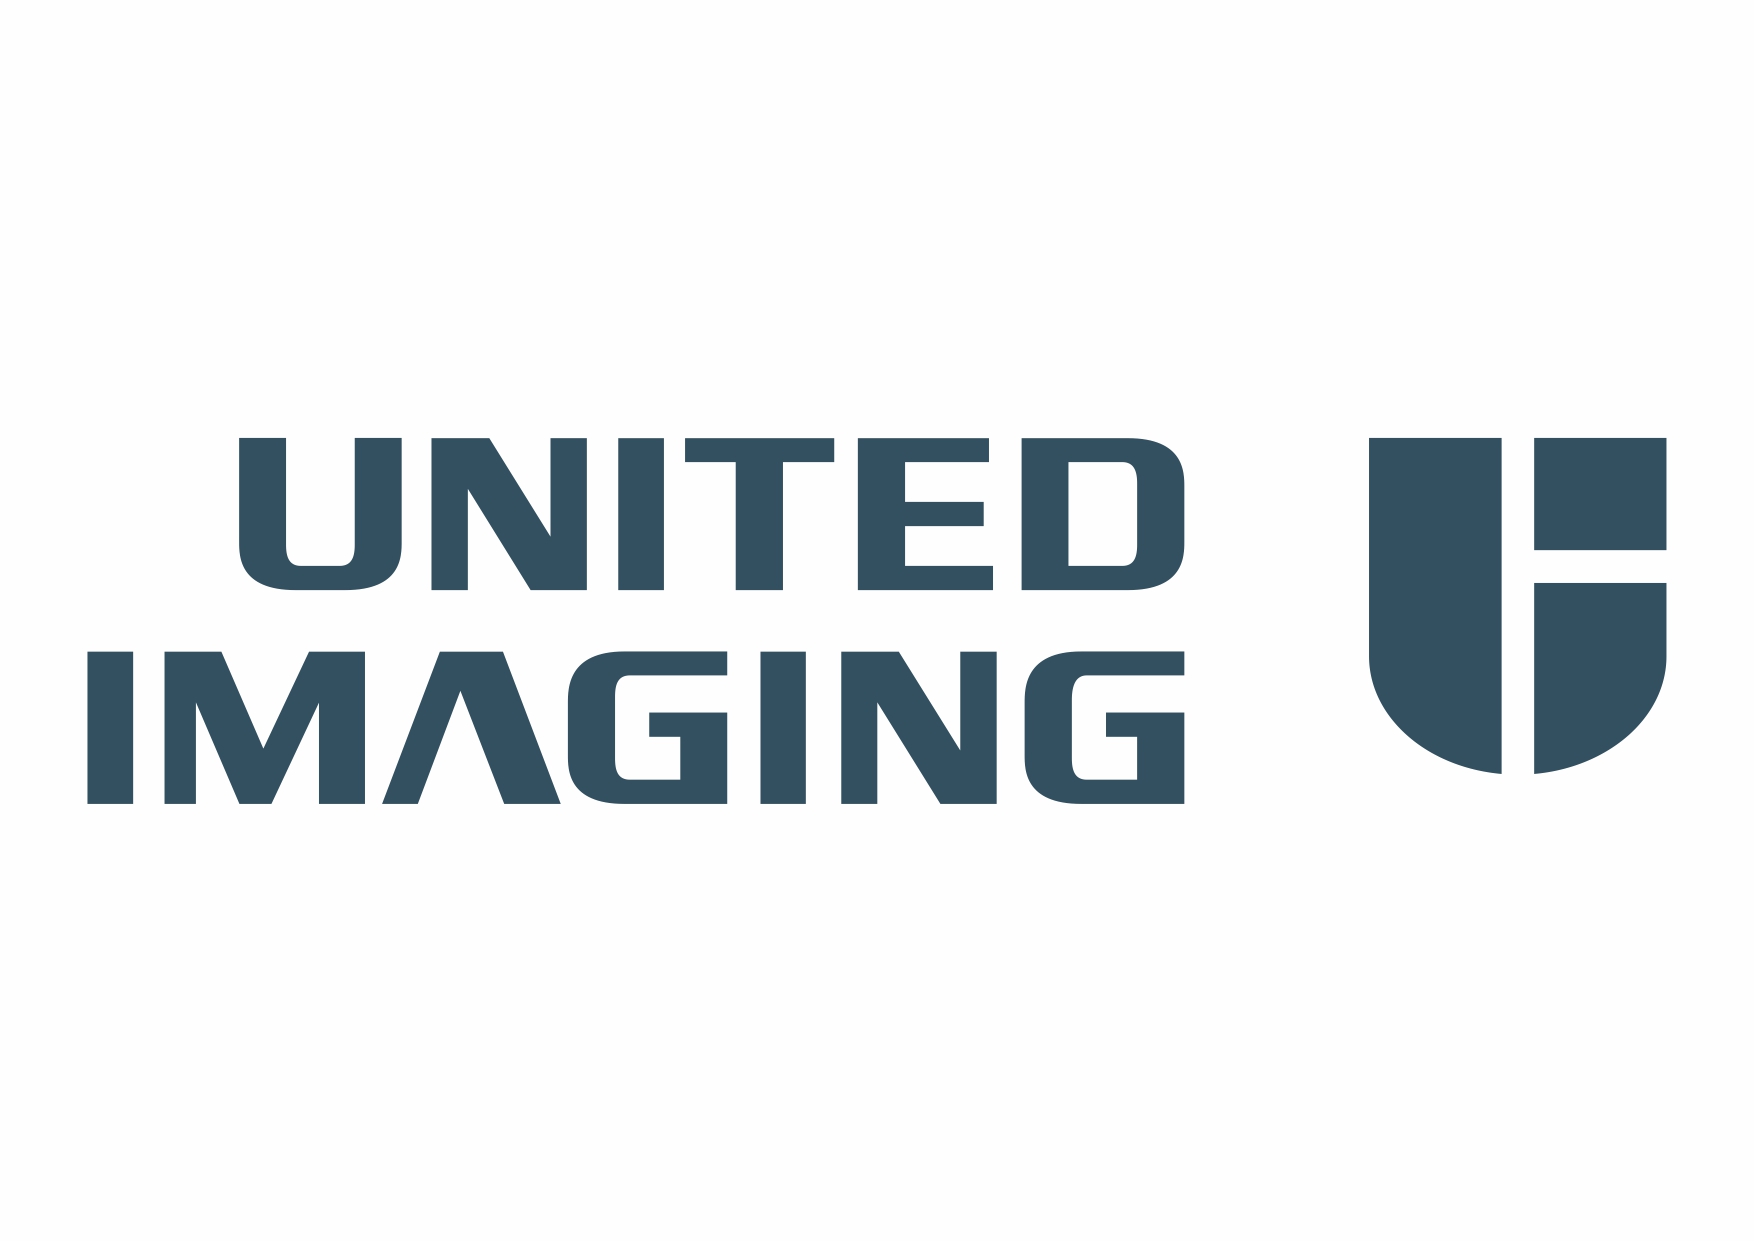 united imaging